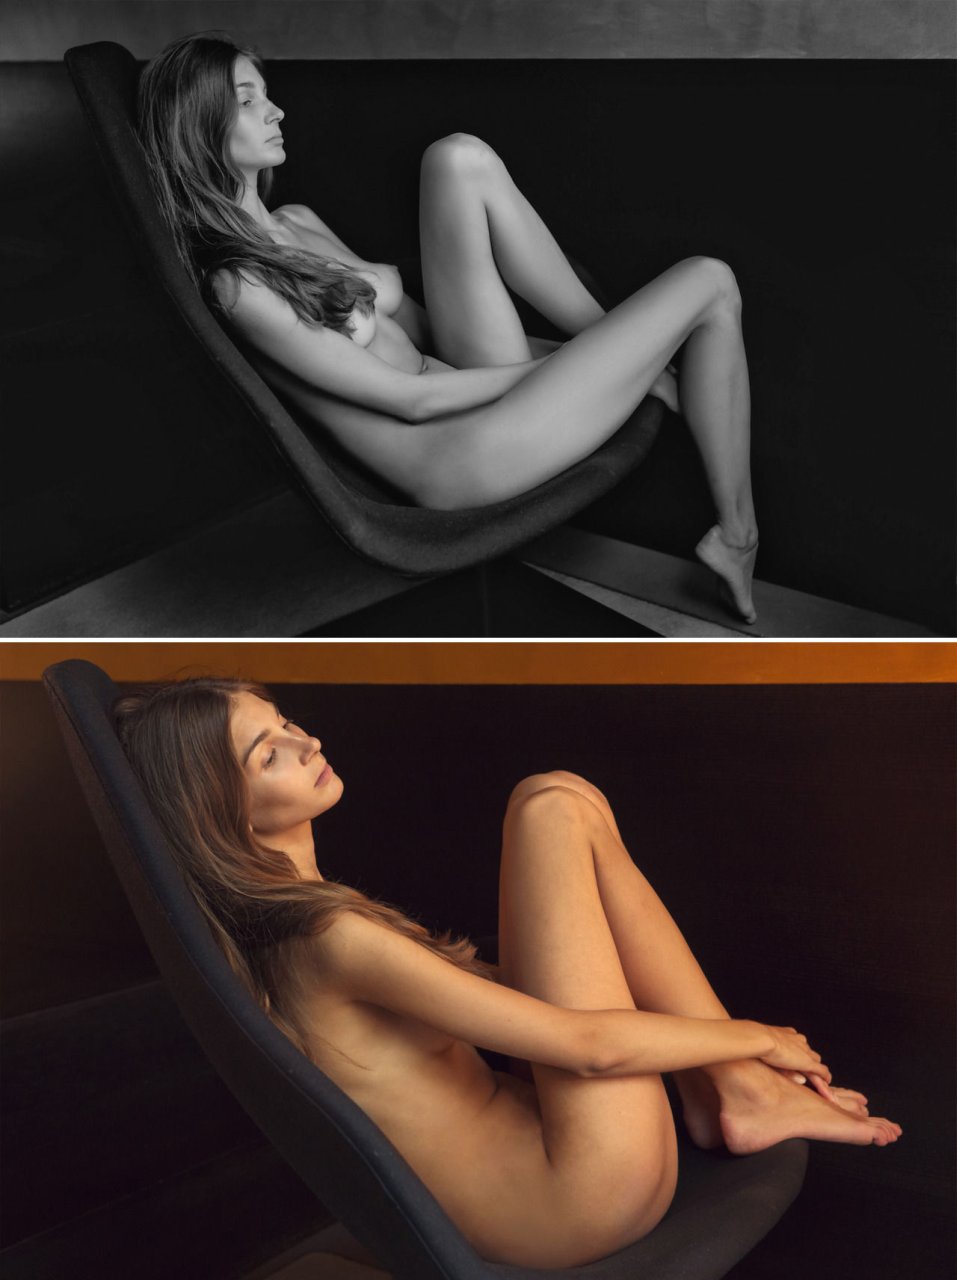 Lina Lorenza Topless 9 Photos Thefappening